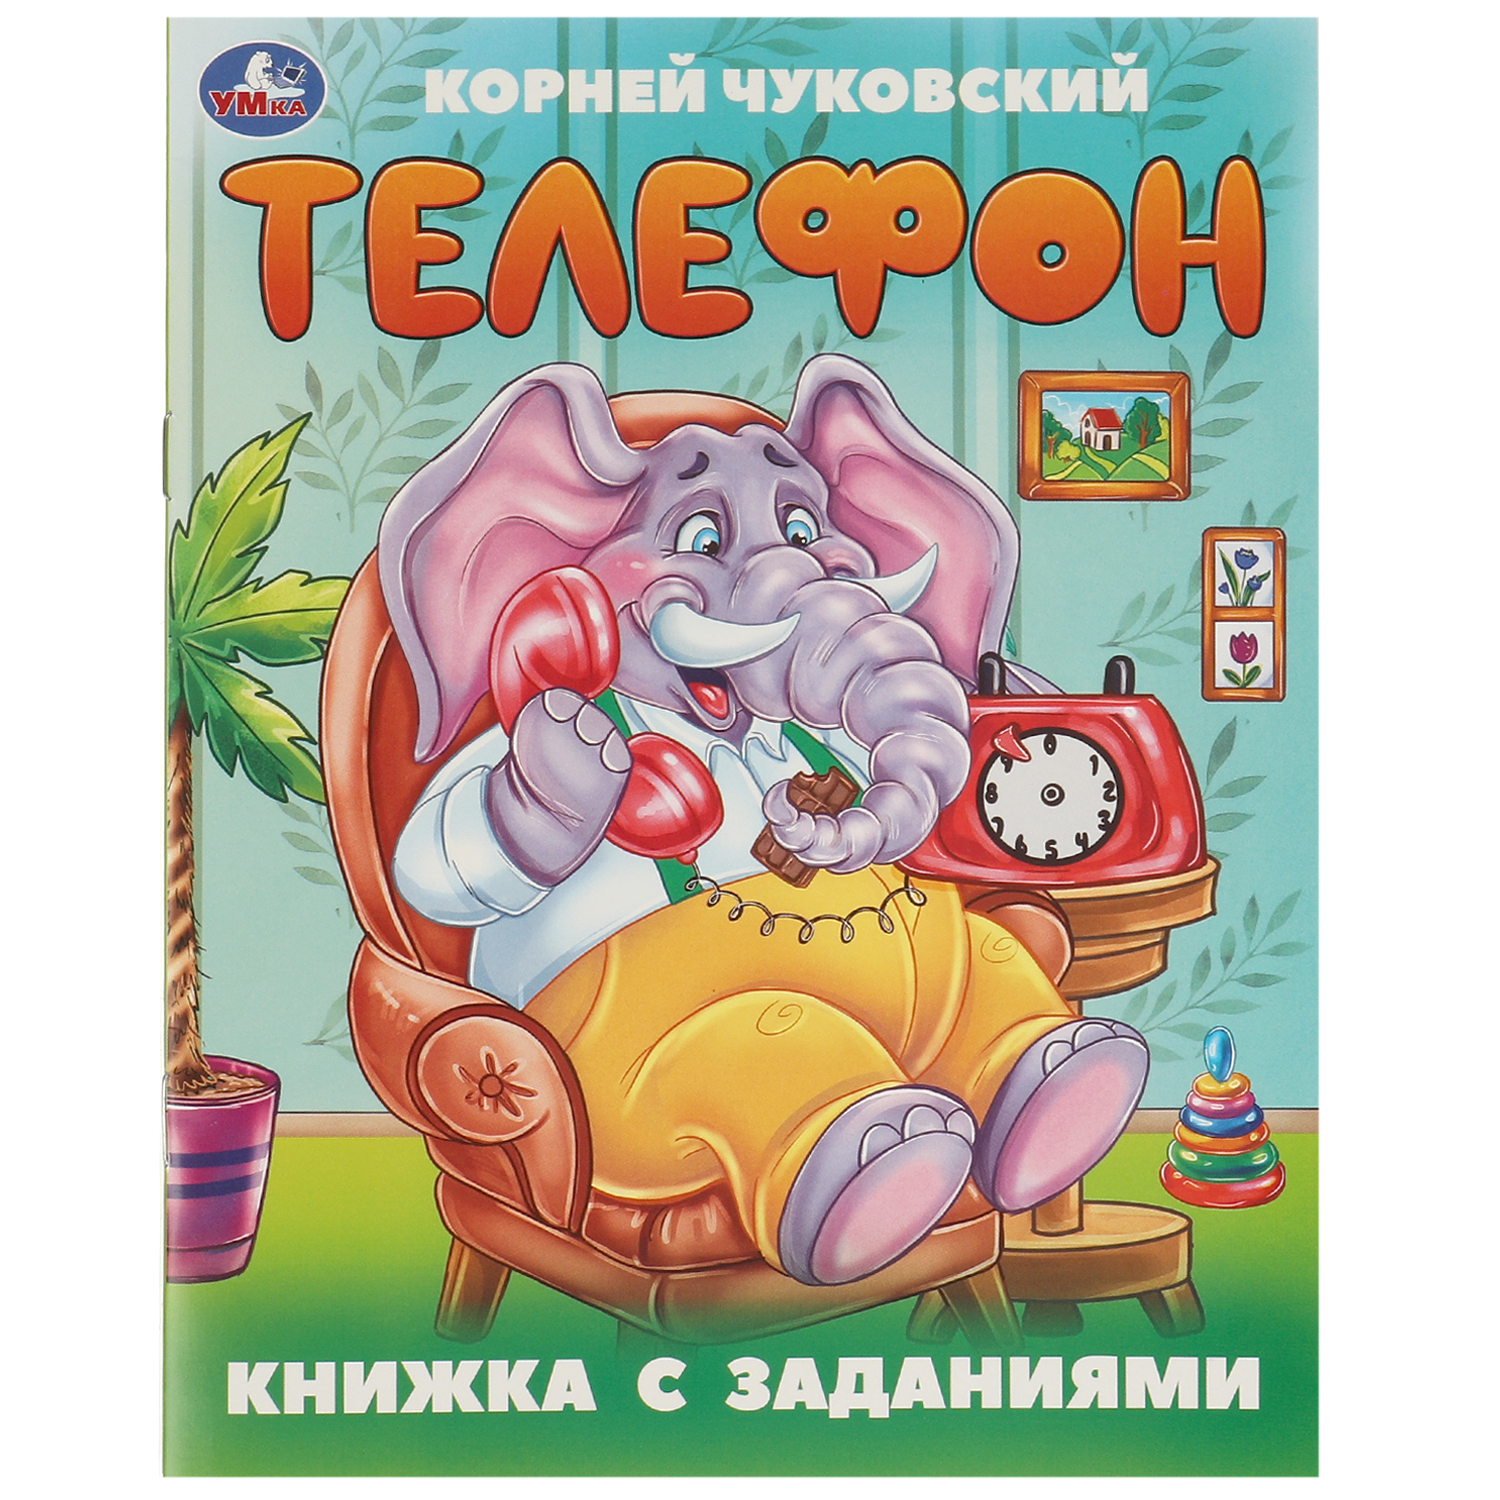 Книга Умка Телефон Чуковский - фото 1